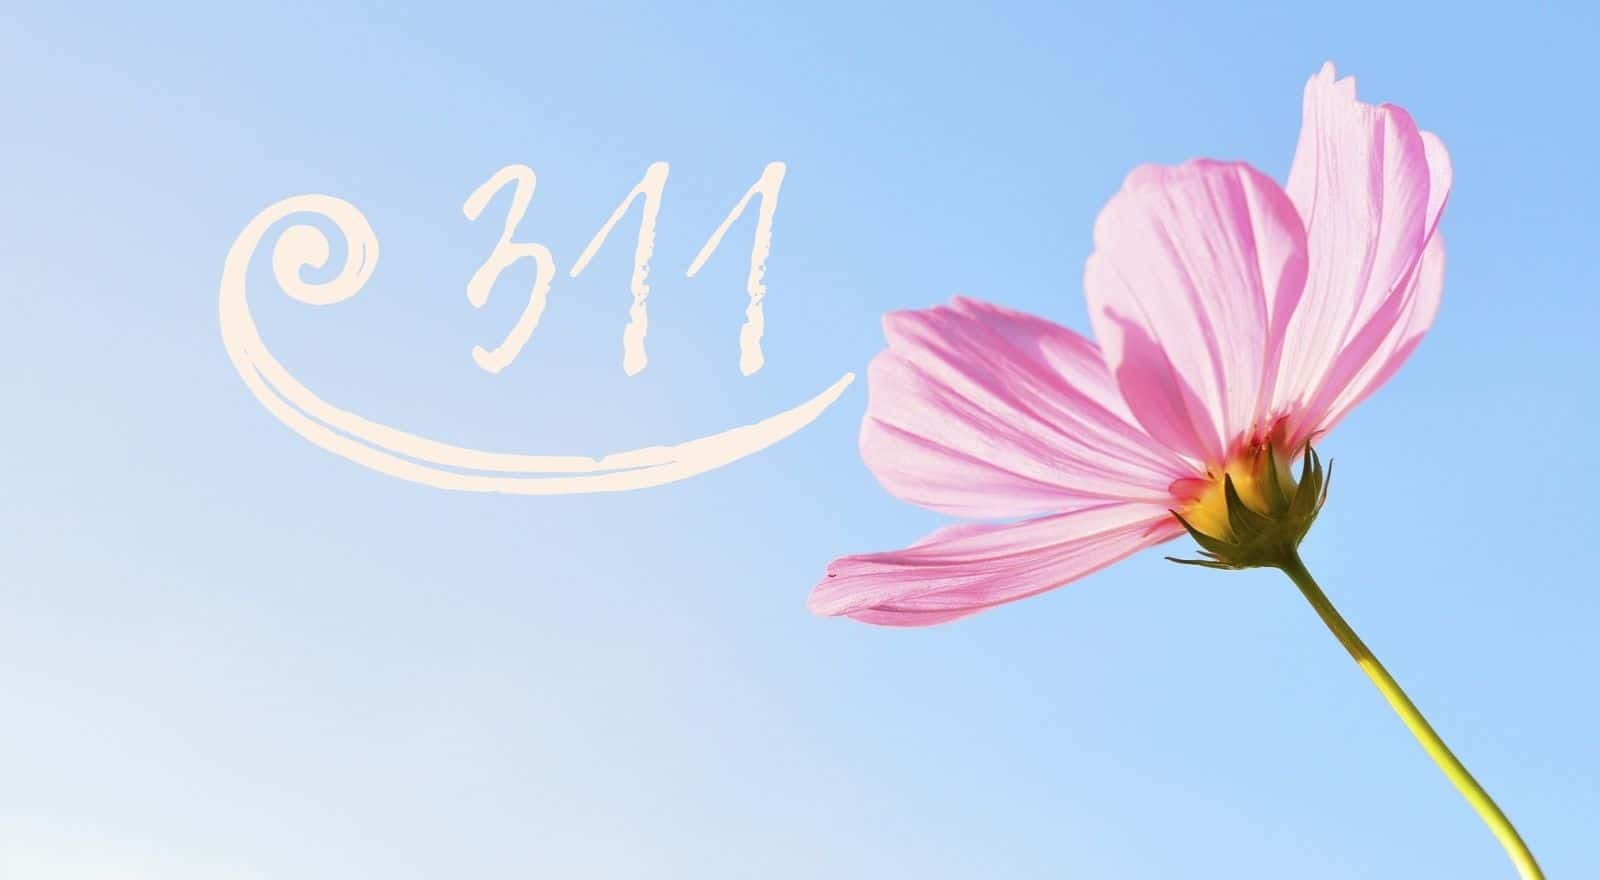 Engelen nummer 311: een hoopvolle boodschap van positiviteit en vreugde